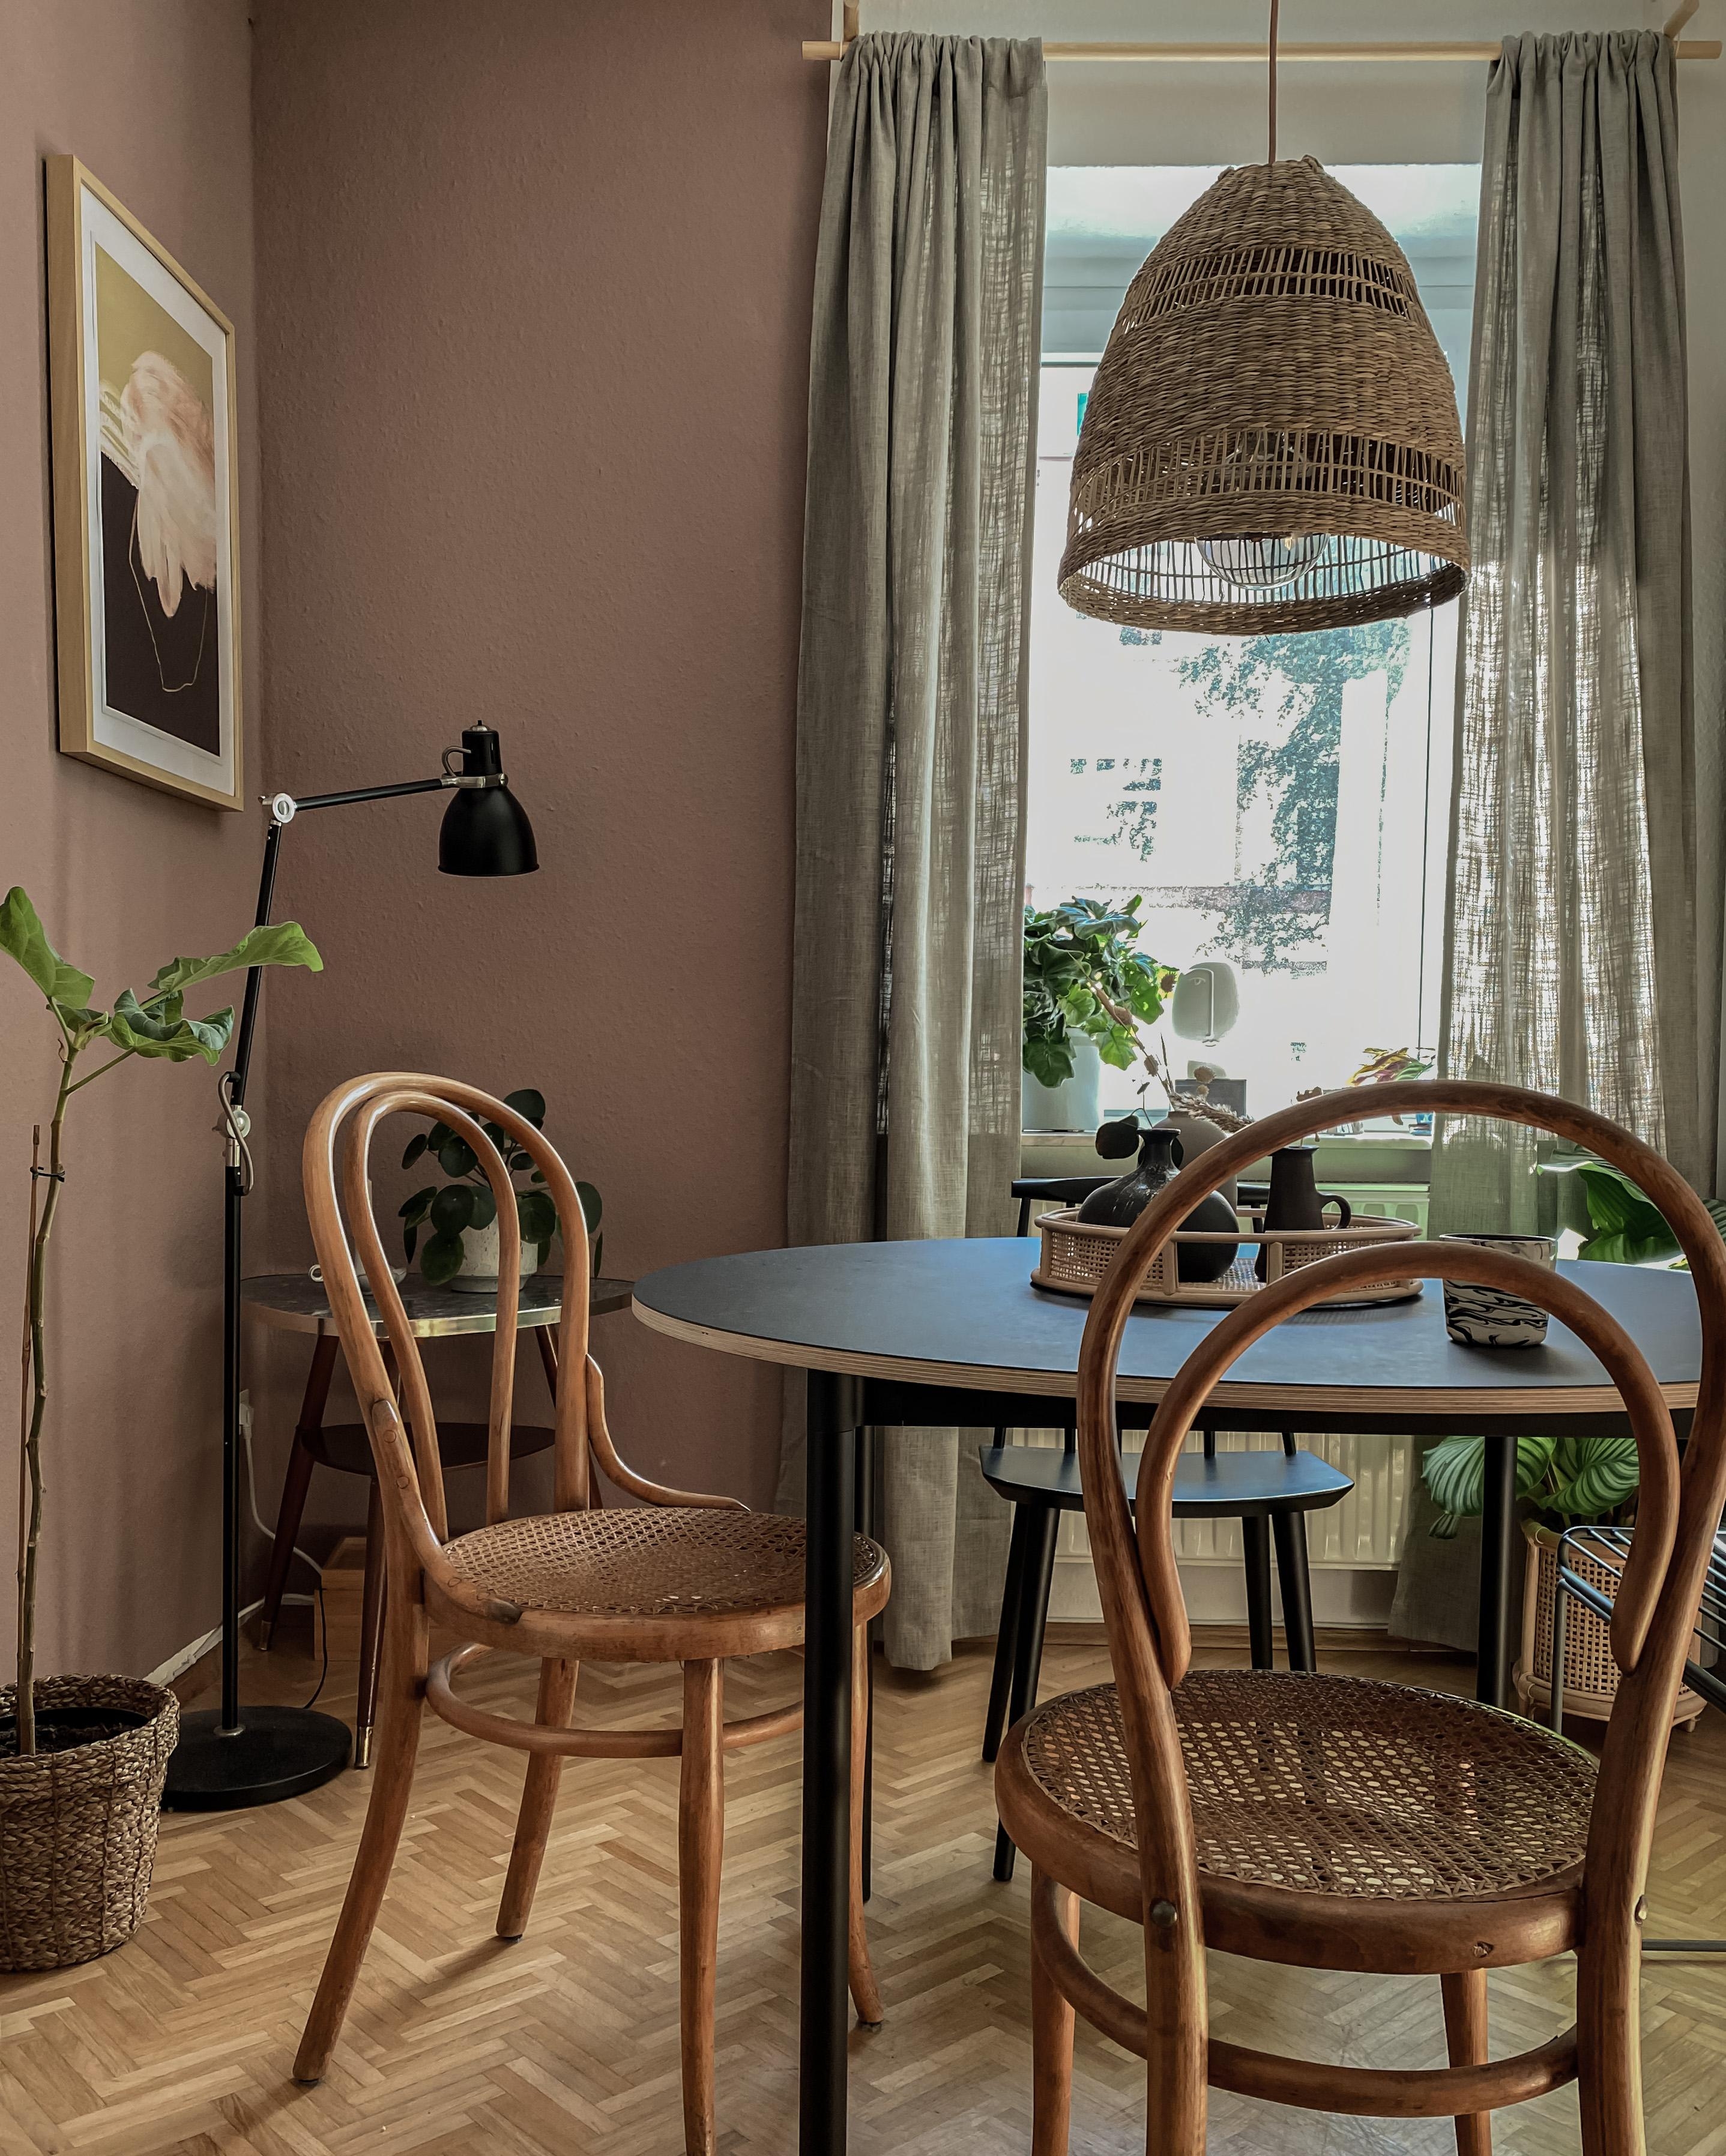 DININGROOM VIBES✨☺️💛 #diningtable #esstisch #essbereich #rundertisch #stühle #vintage #wienergeflecht #wandfarbe #altbau